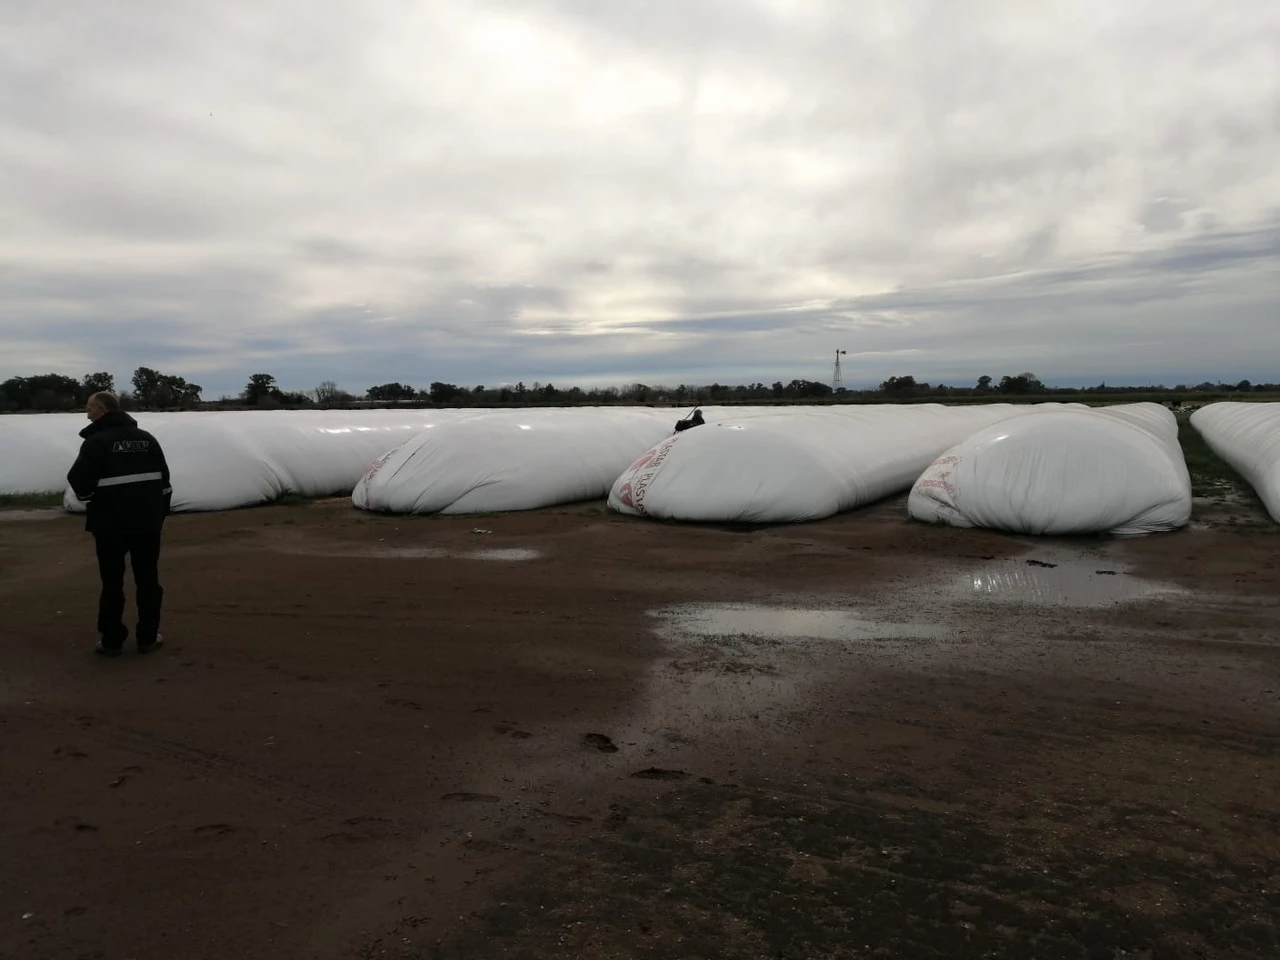 La AFIP incautó casi 7000 toneladas de granos "no declarados" en silobolsas